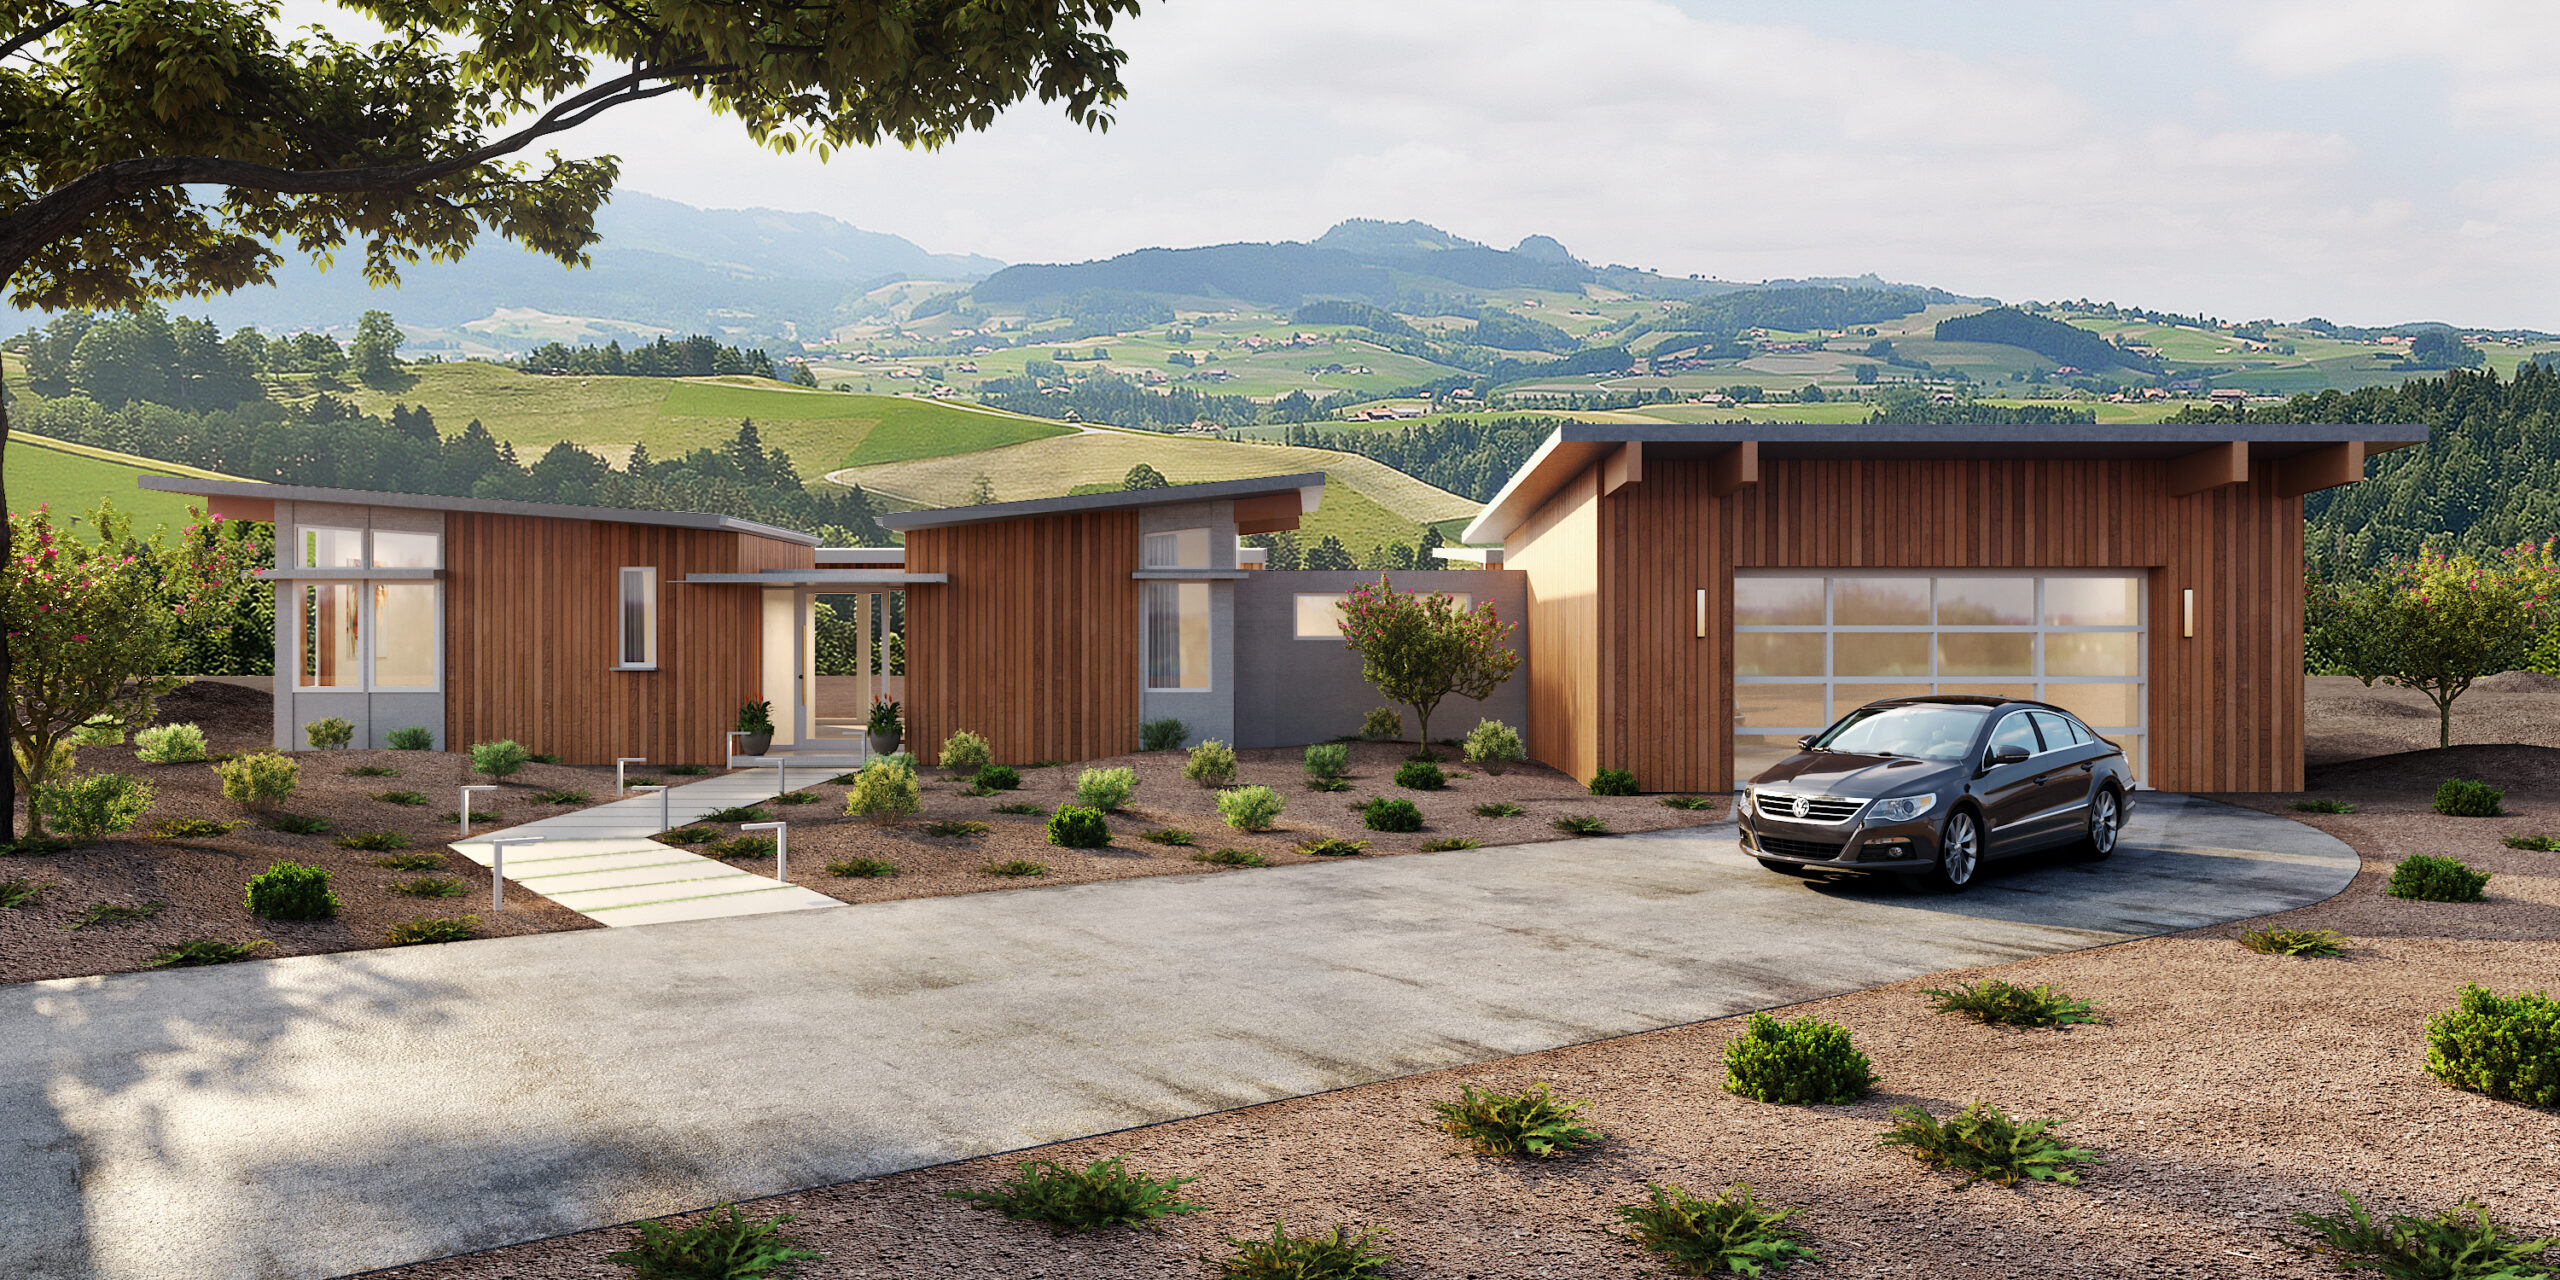 Modern residential Home design by 3D Architectural Visualization Studio – Bern, Zurich, Switzerland